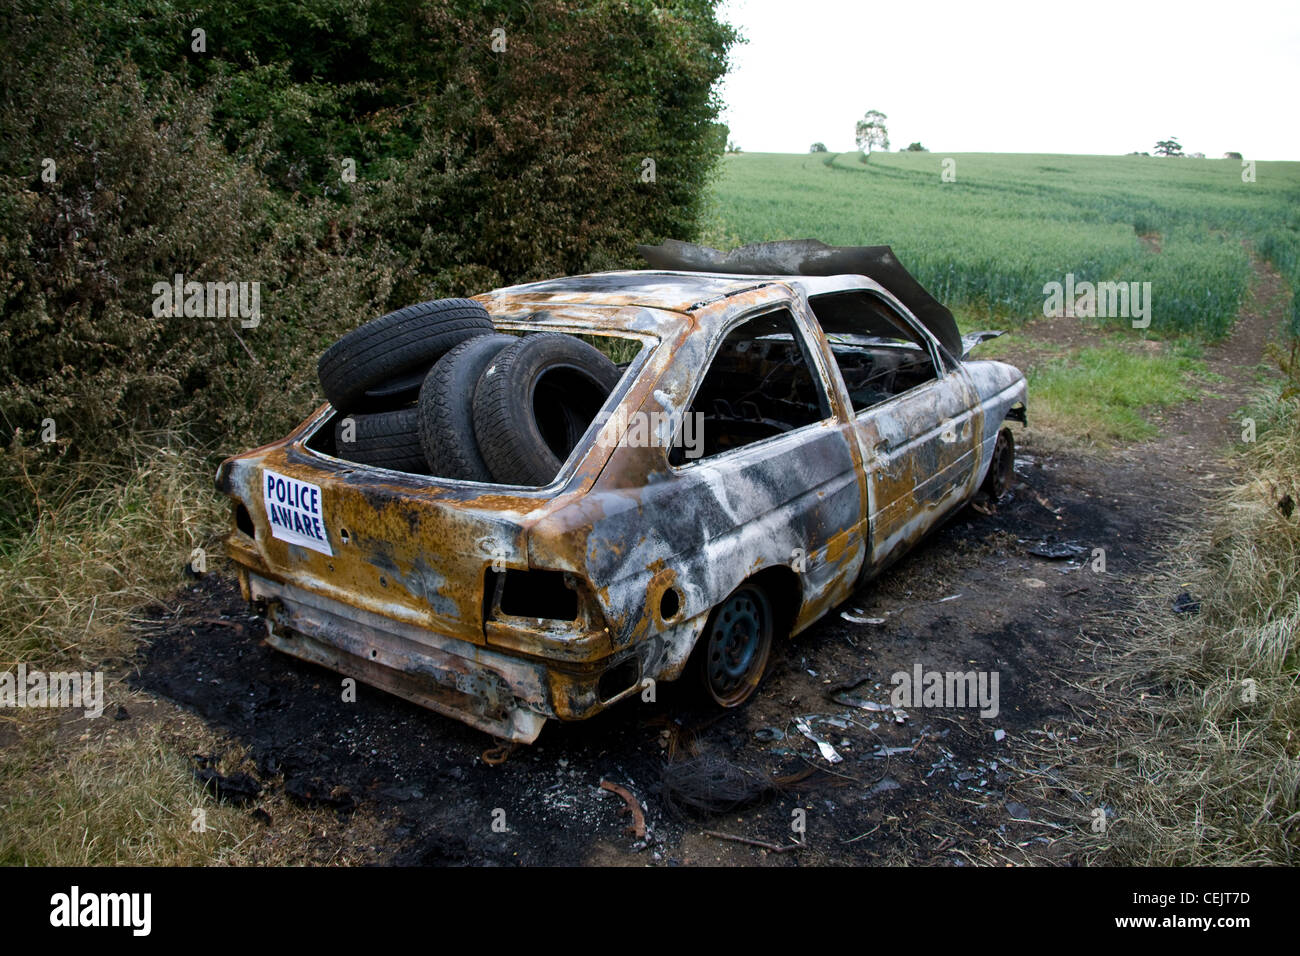 Burnt Out voiture volée dans un champ gateway,Suffolk, Angleterre. Banque D'Images